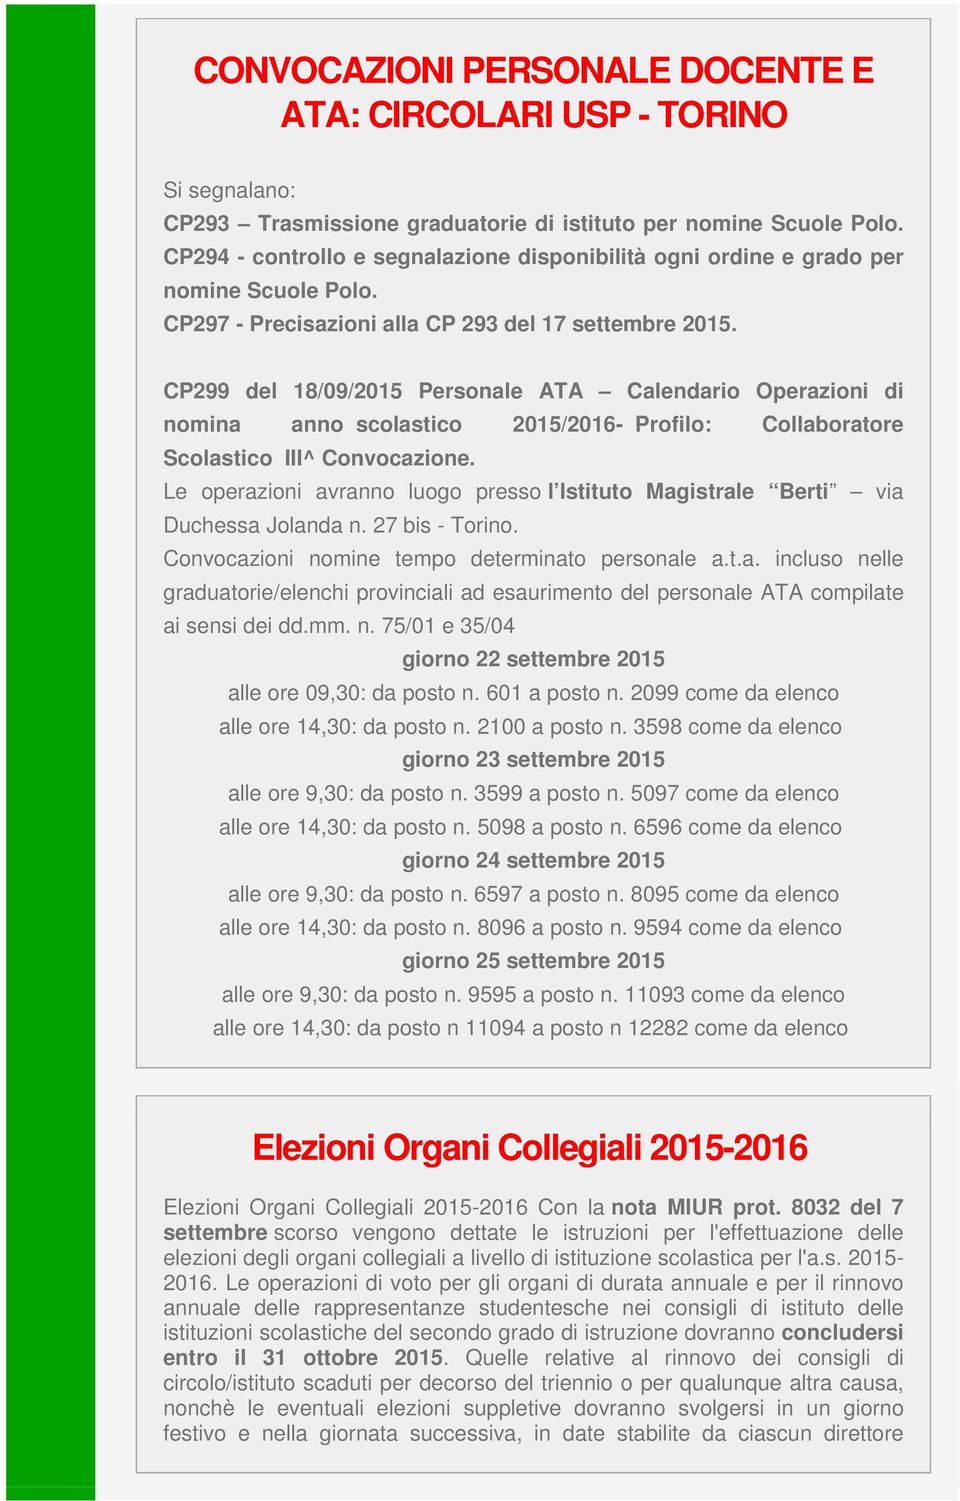 CP299 del 18/09/2015 Personale ATA Calendario Operazioni di nomina anno scolastico 2015/2016- Profilo: Collaboratore Scolastico III^ Convocazione.